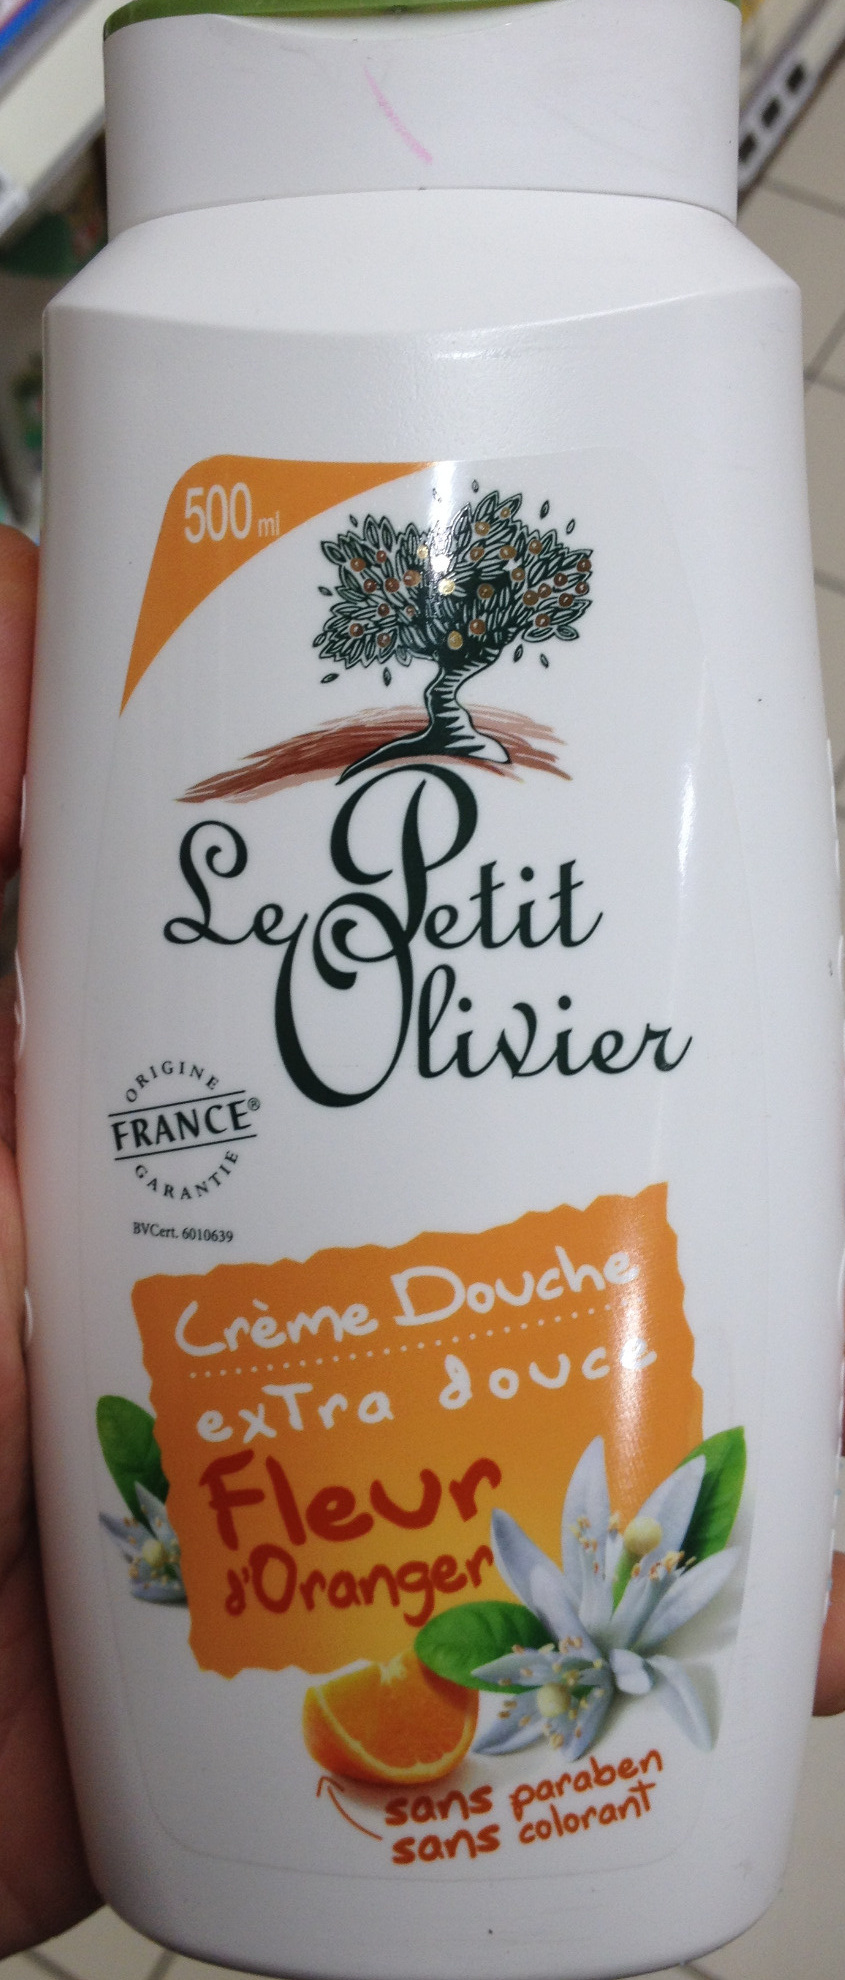 Crème douche extra douce à la fleur d'oranger - Produkto - fr